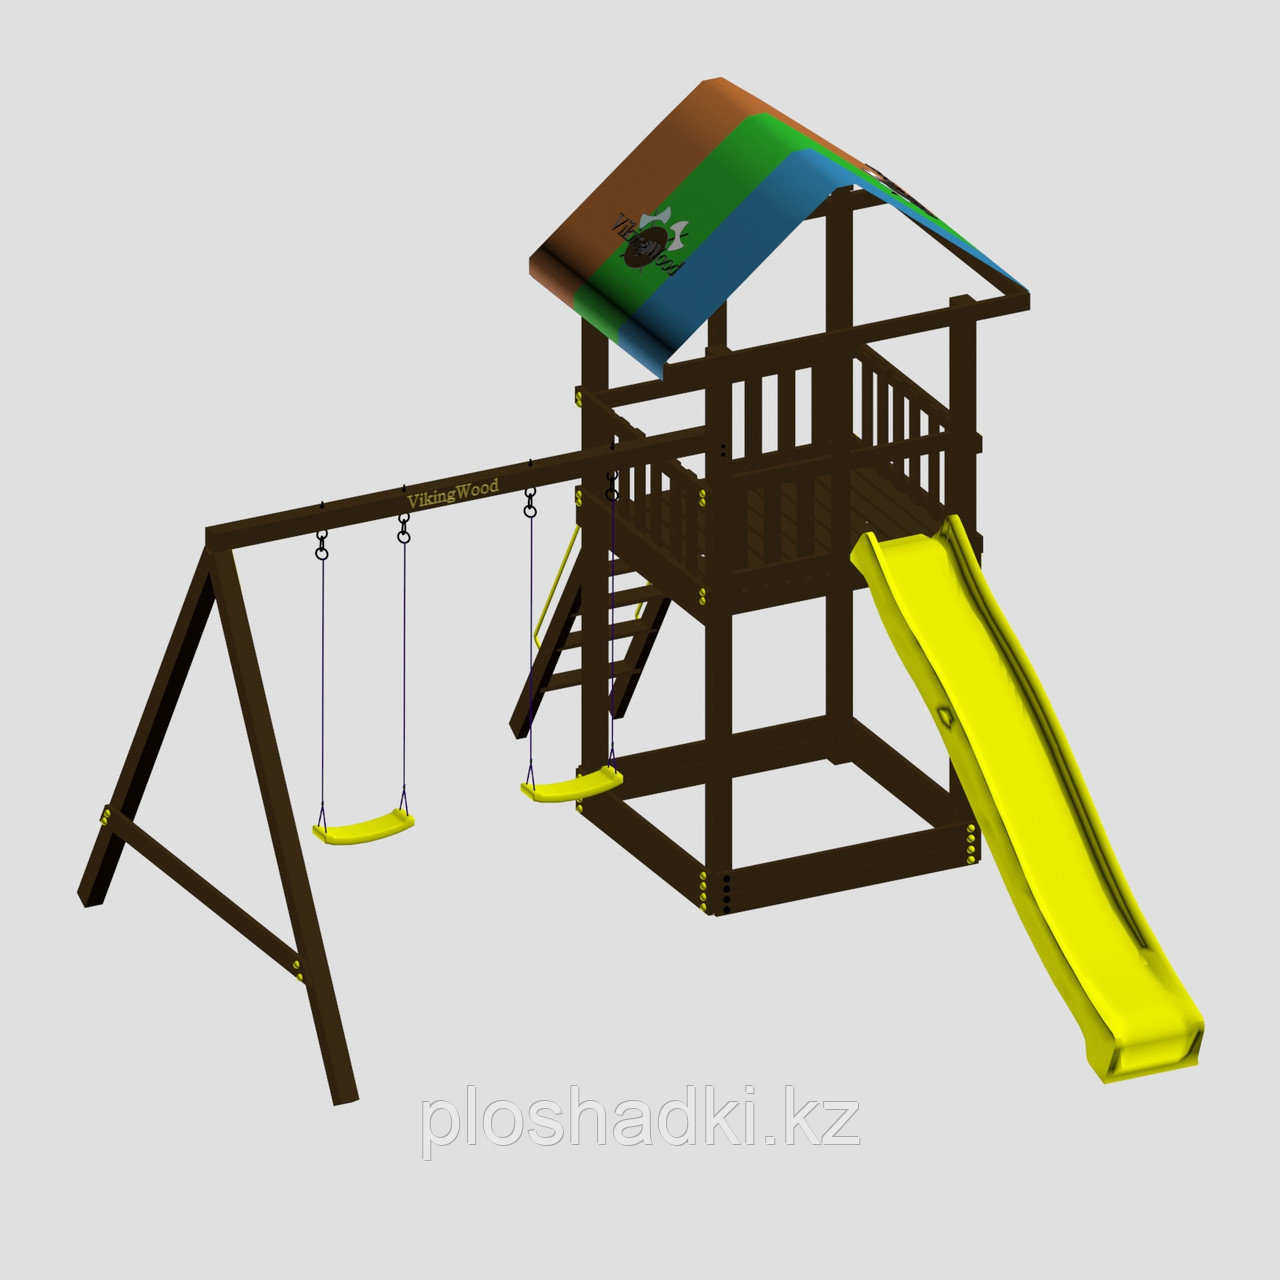 Игровой комплекс "Смайл", цветная крыша, лестница 2 качели, горка-скат разных цветов, фото 1